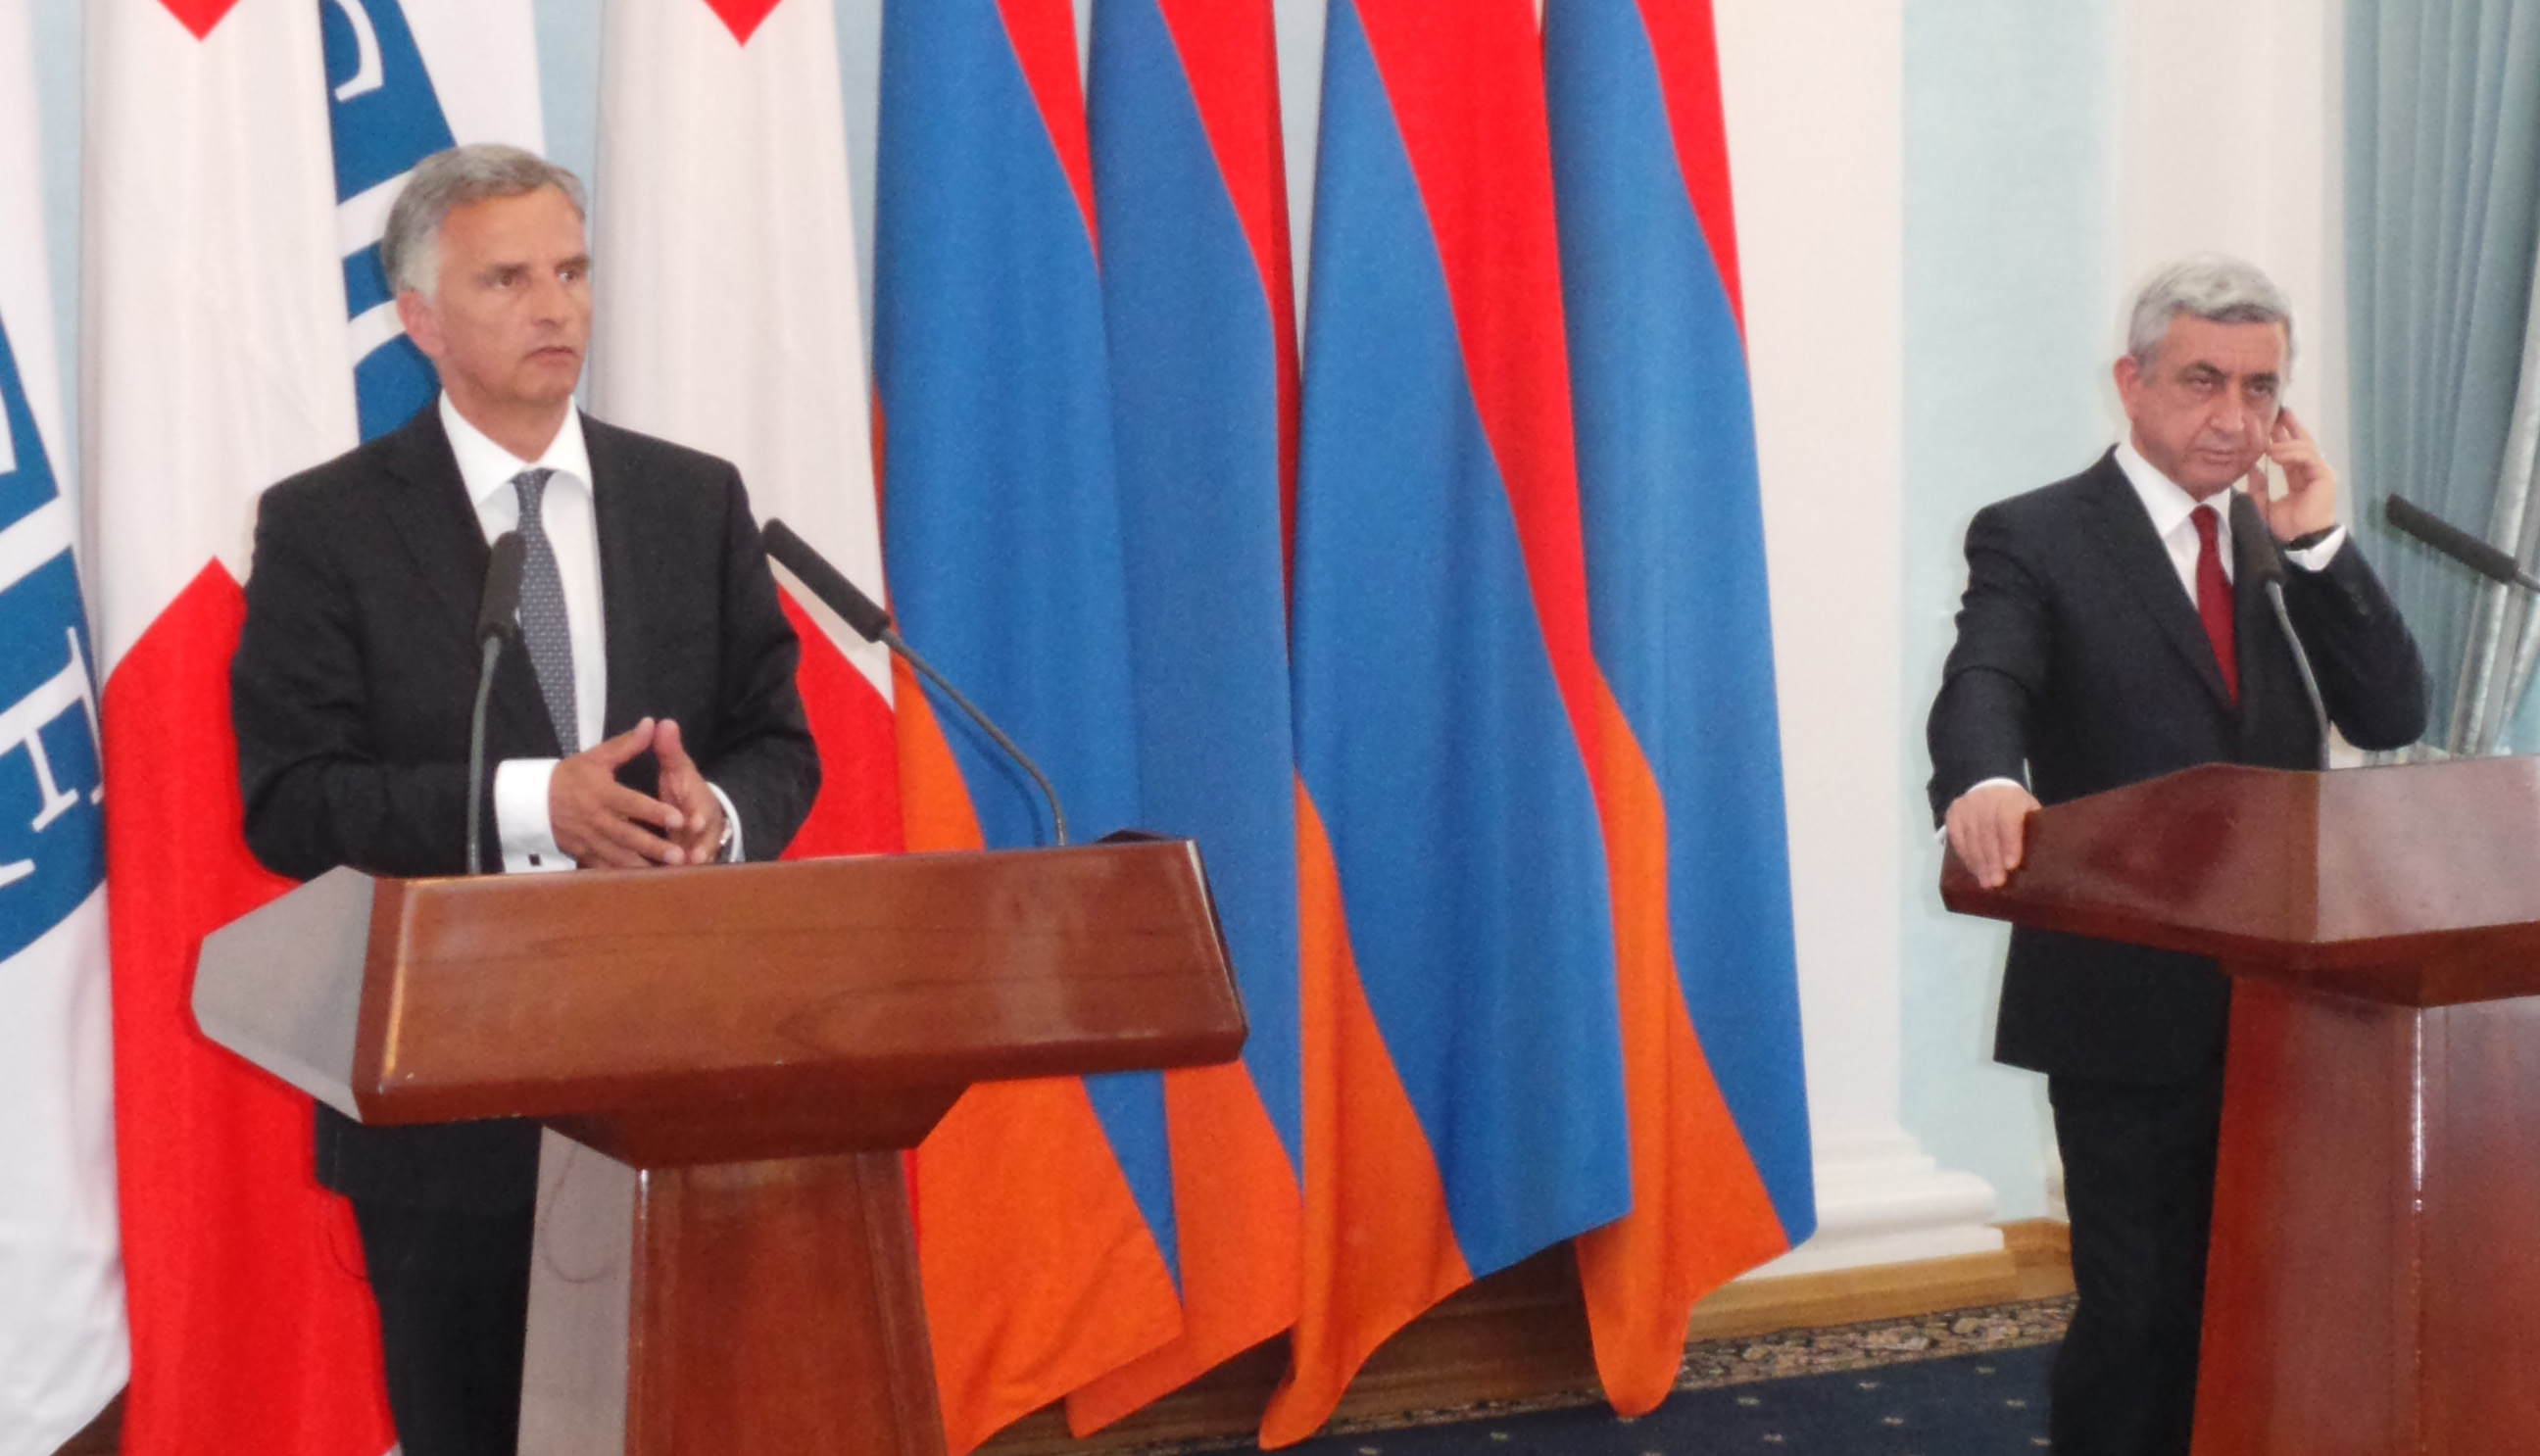 Bundespräsident Didier Burkhalter spricht bei der Medienkonferenz nach dem Gespräch mit dem armenischen Präsidenten Serzh Sargsyan.